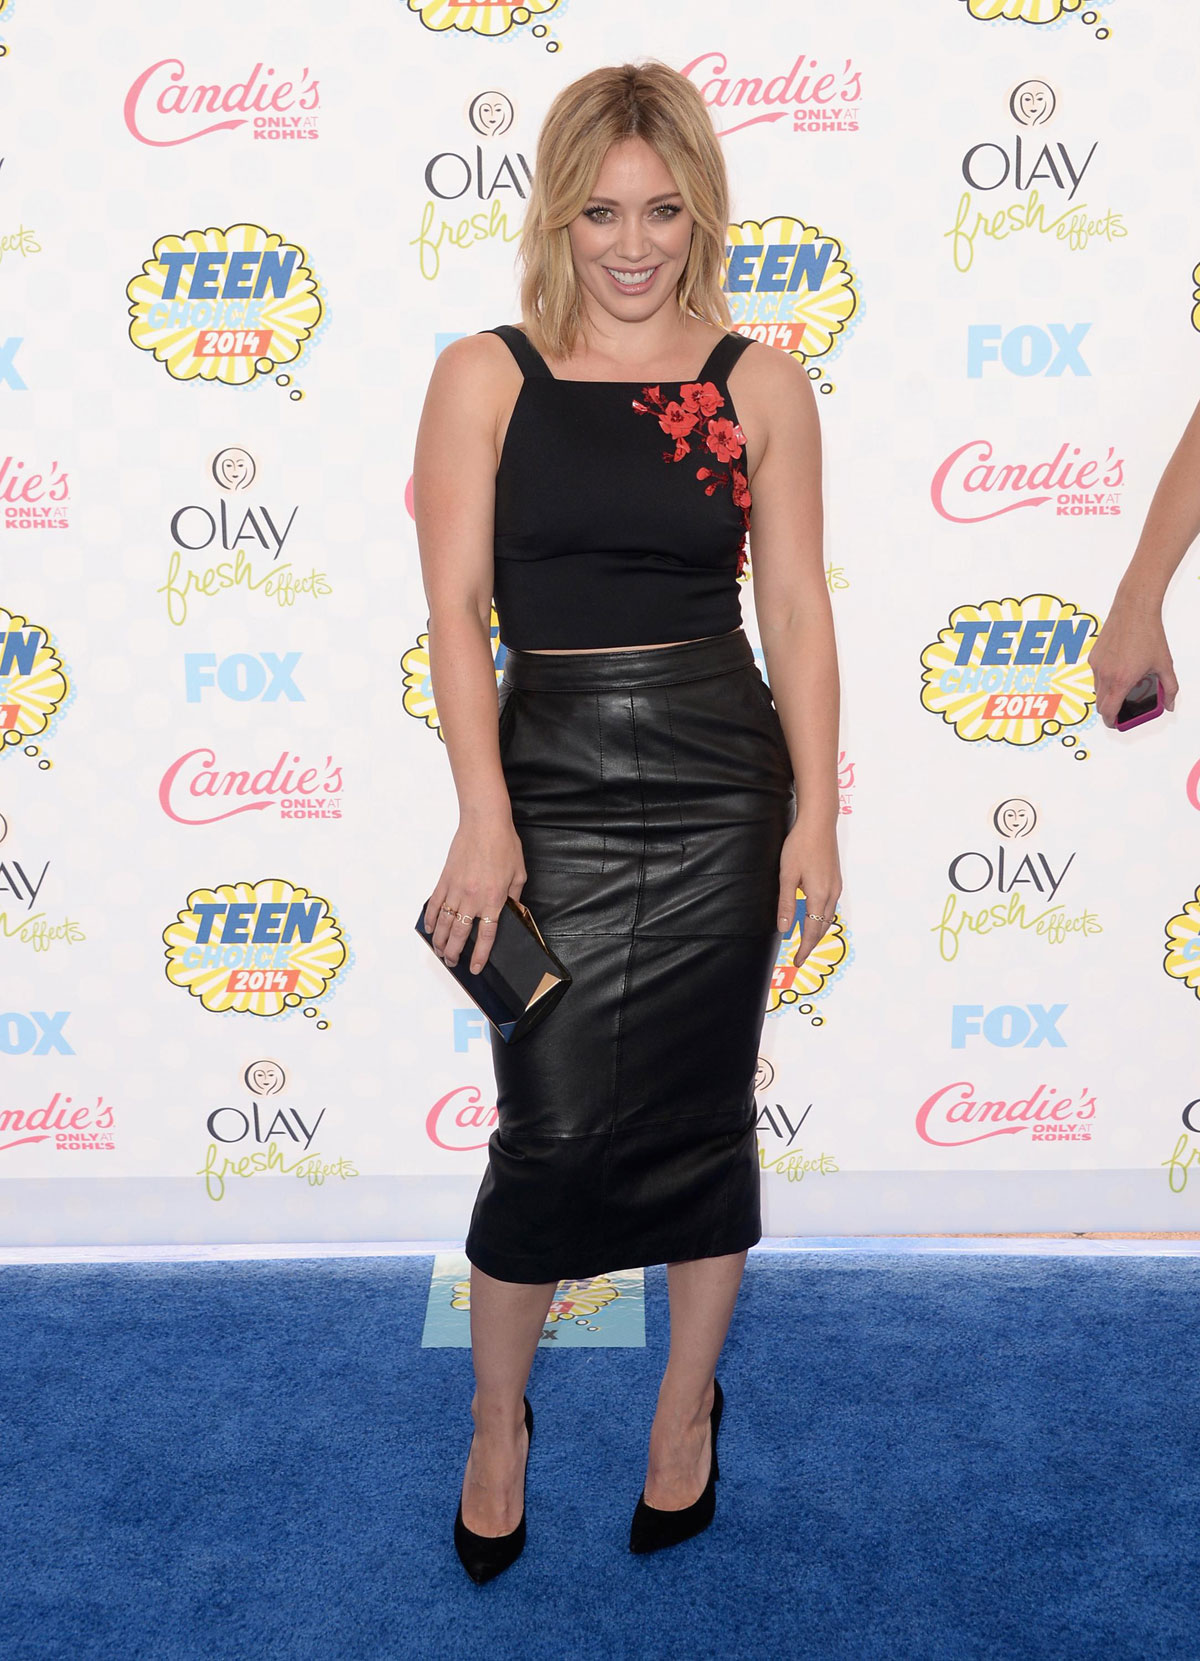 Hilary Duff attends FOX’s 2014 Teen Choice Awards